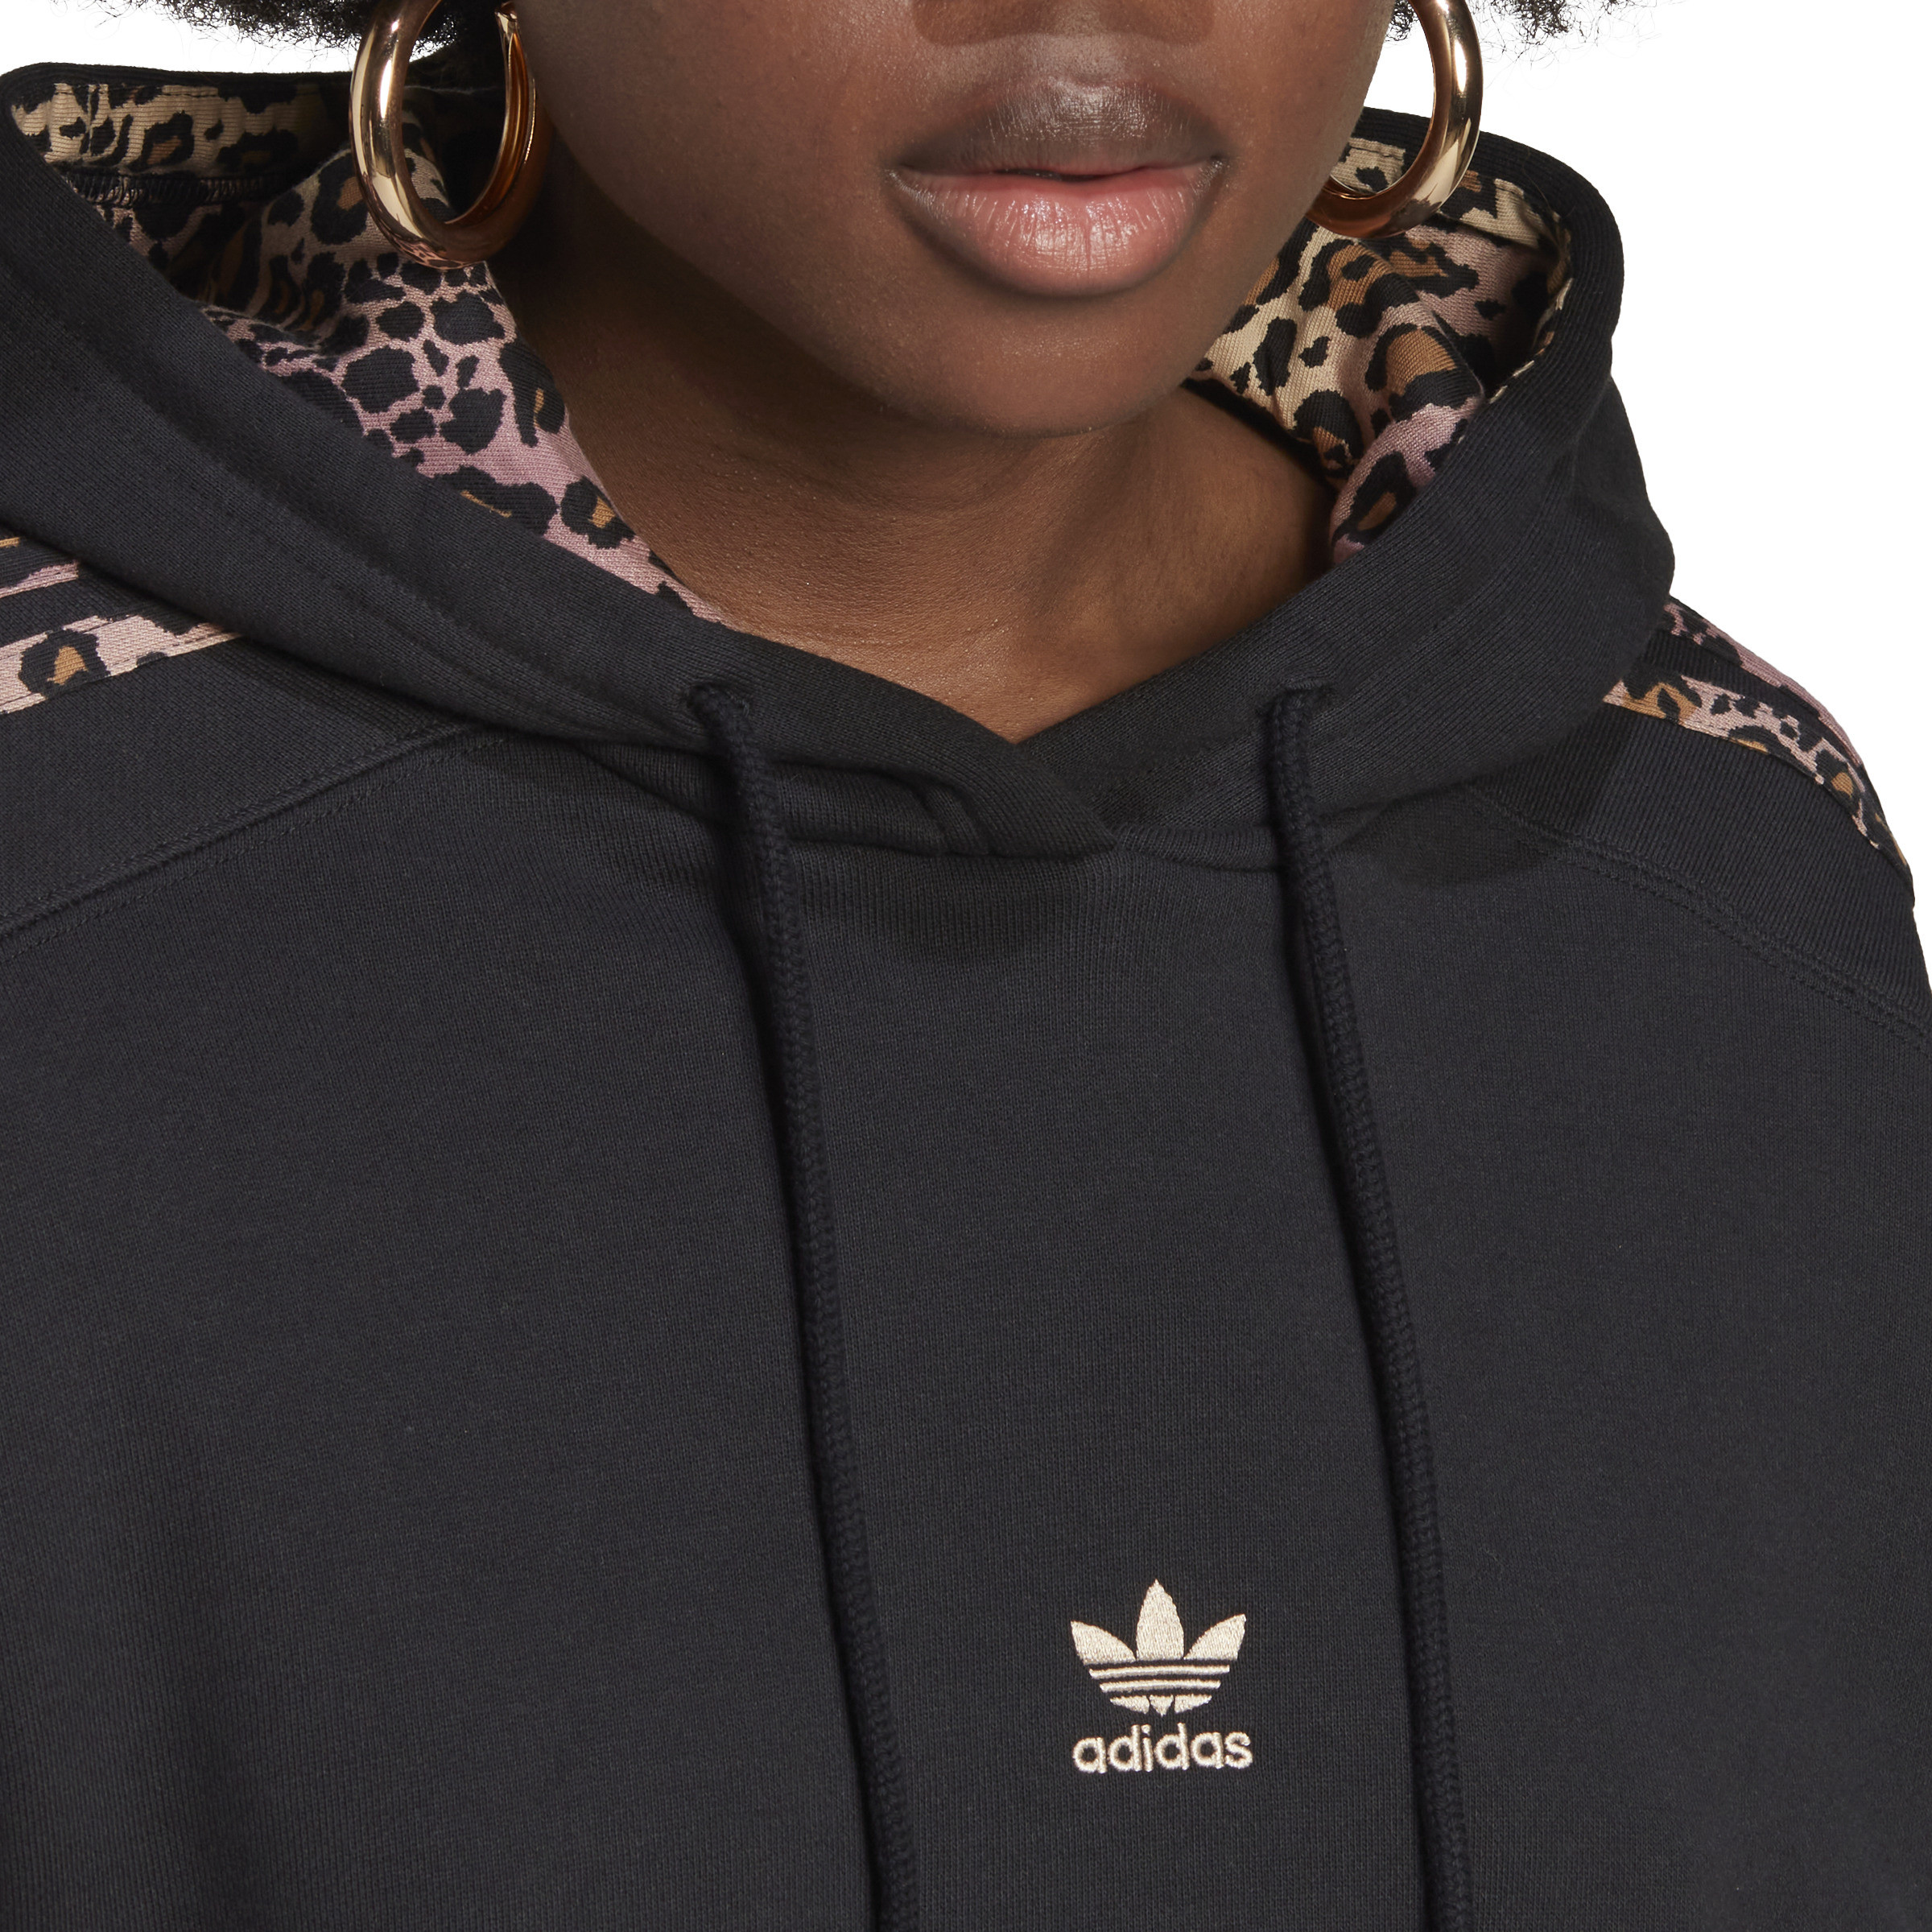 Adidas - Sweatshirt with logo, Black, large image number 6